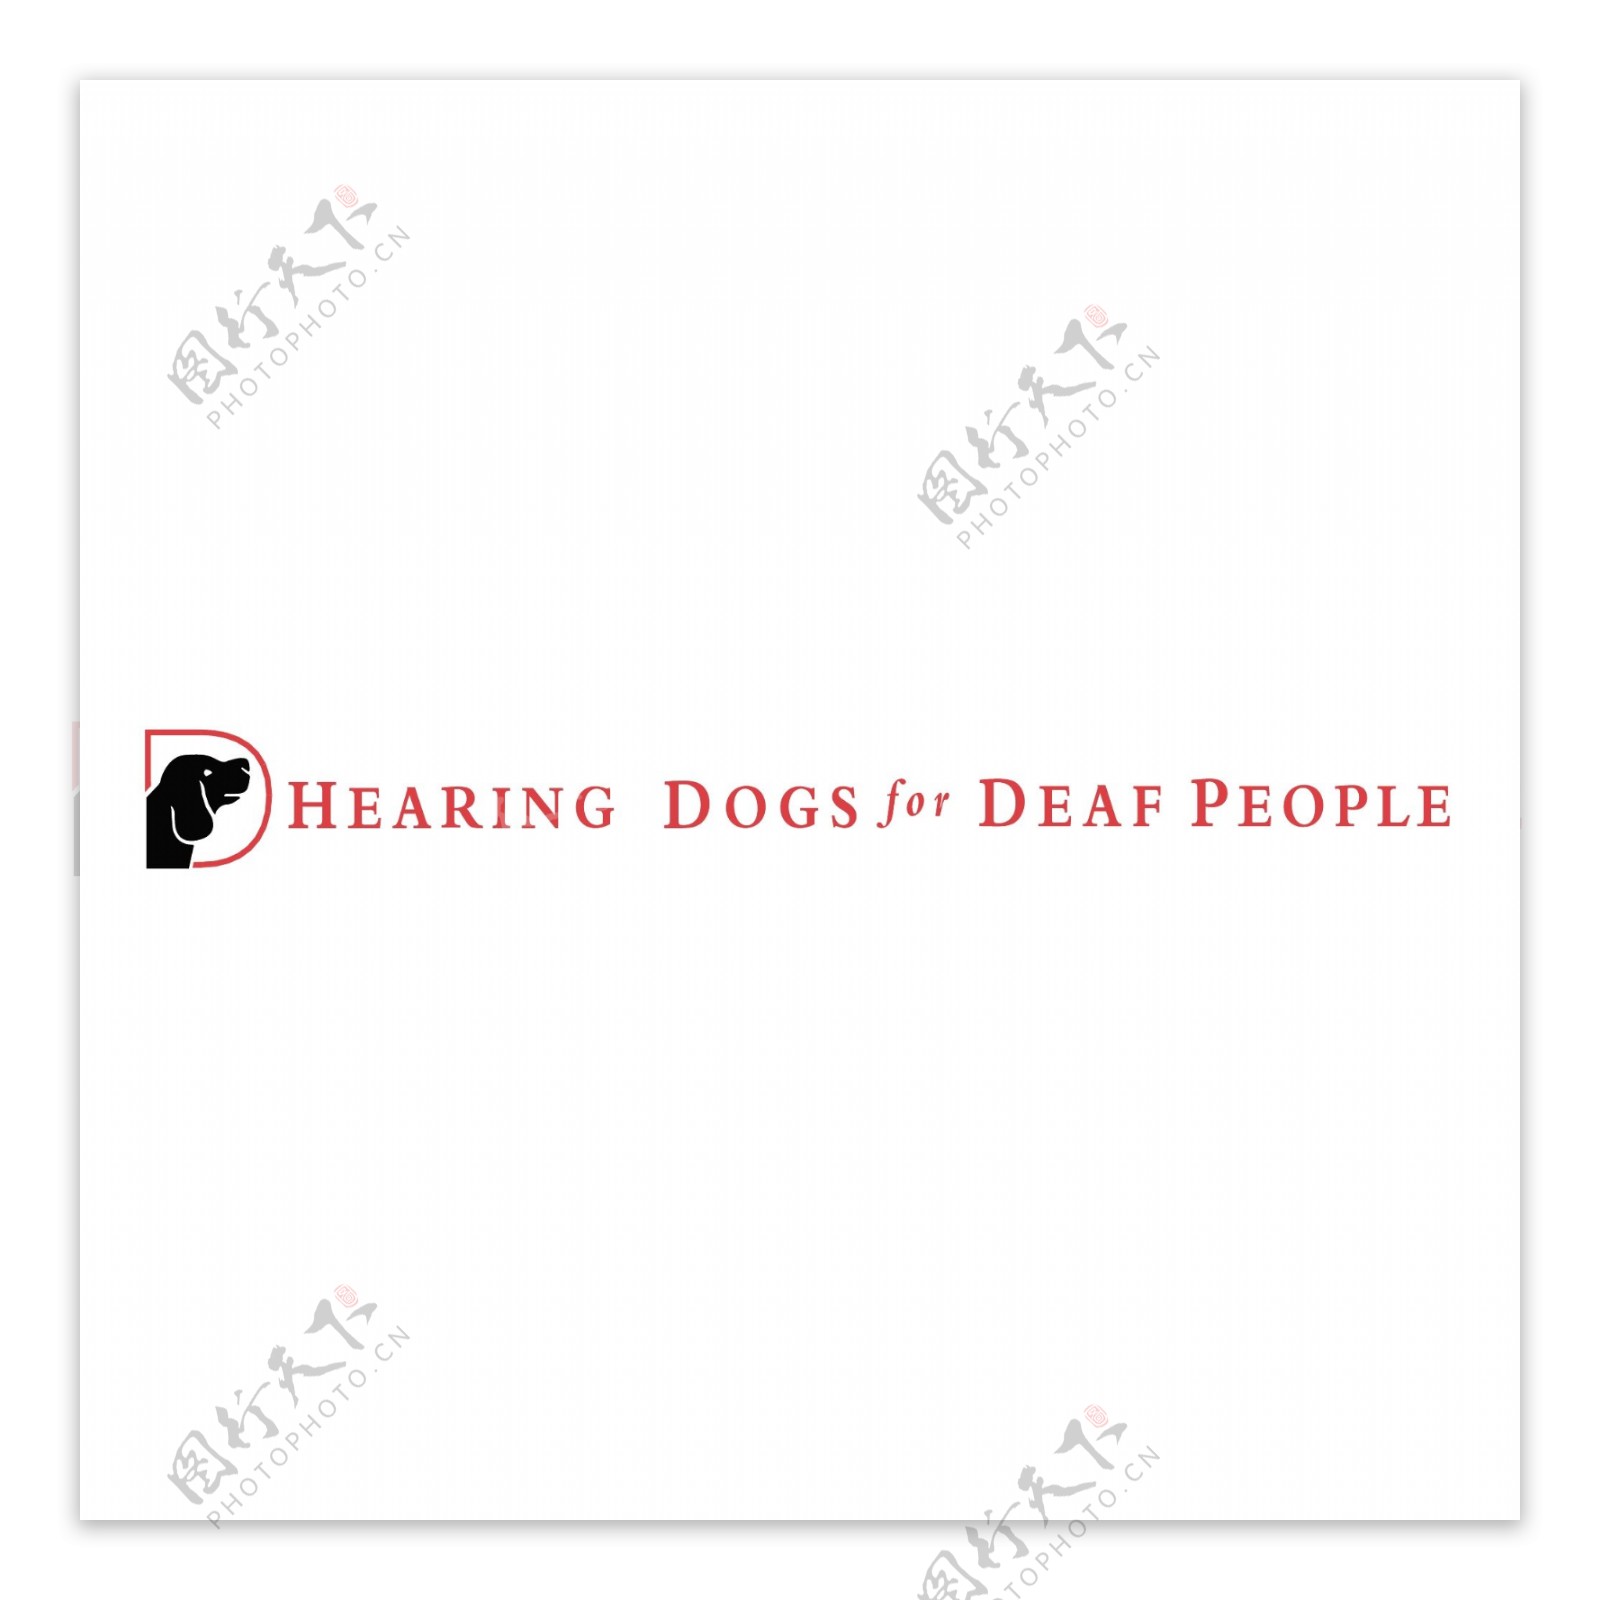 聋人助听犬